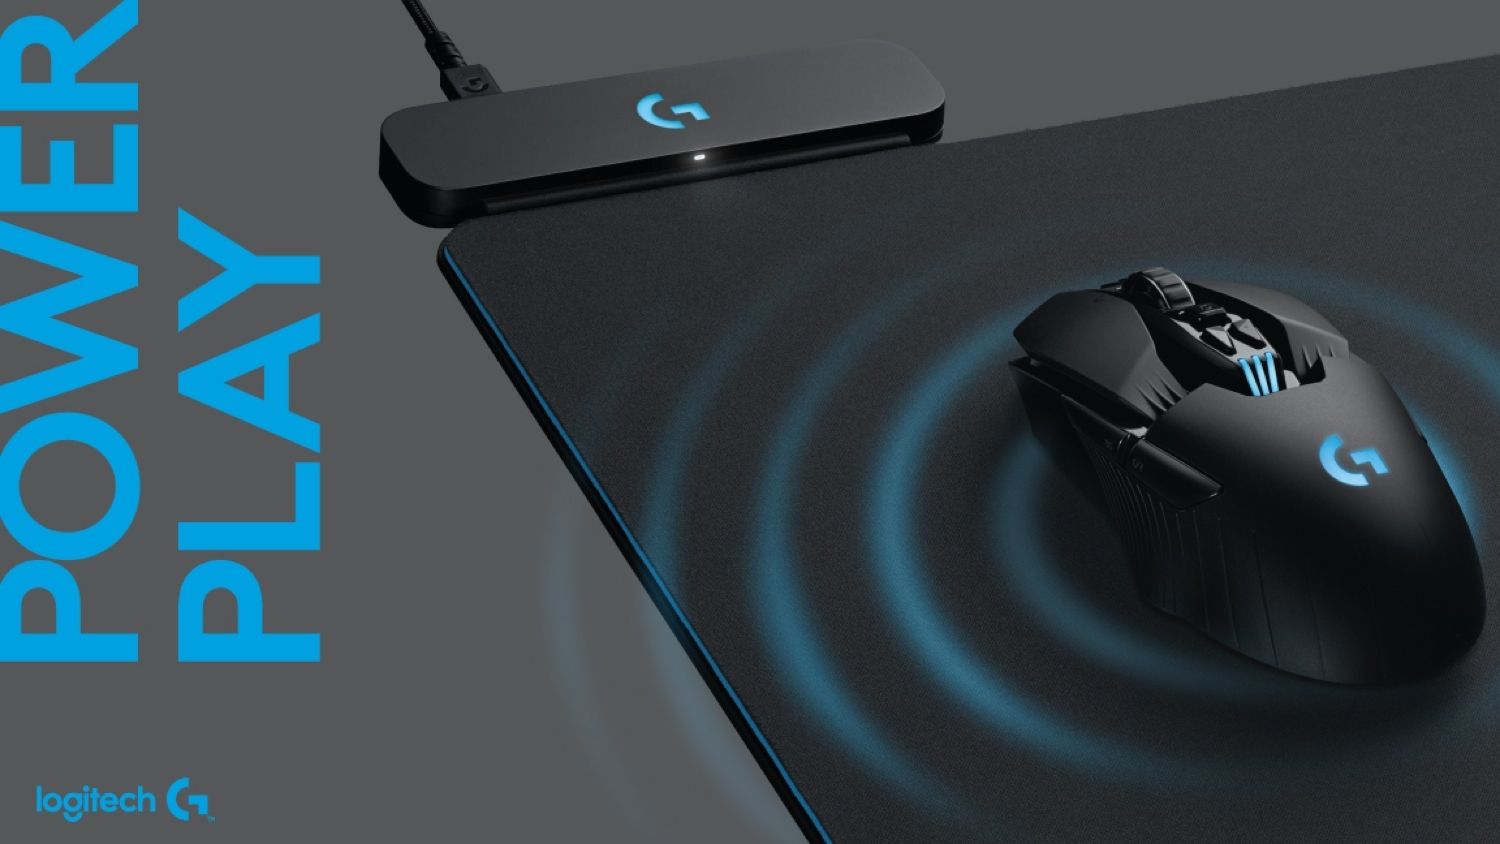 Elektropositief Ministerie Op de kop van Logitech's Wireless Charging Mousepad Is Pure Genius